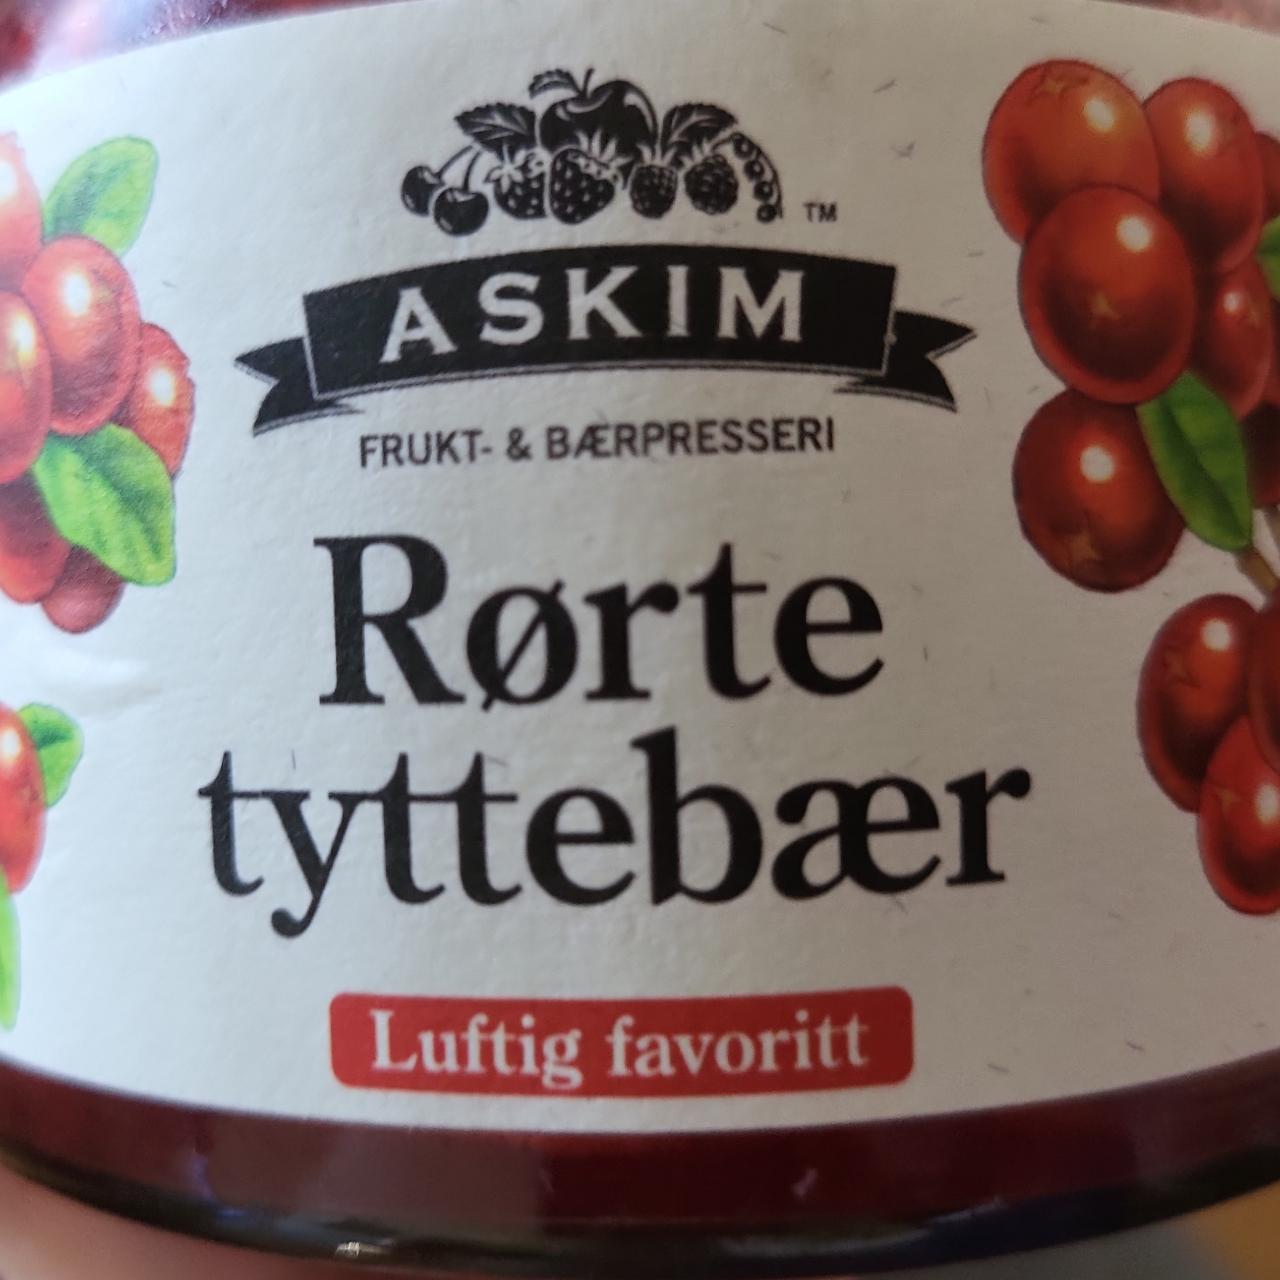 Fotografie - Rørte tyttebær Askim